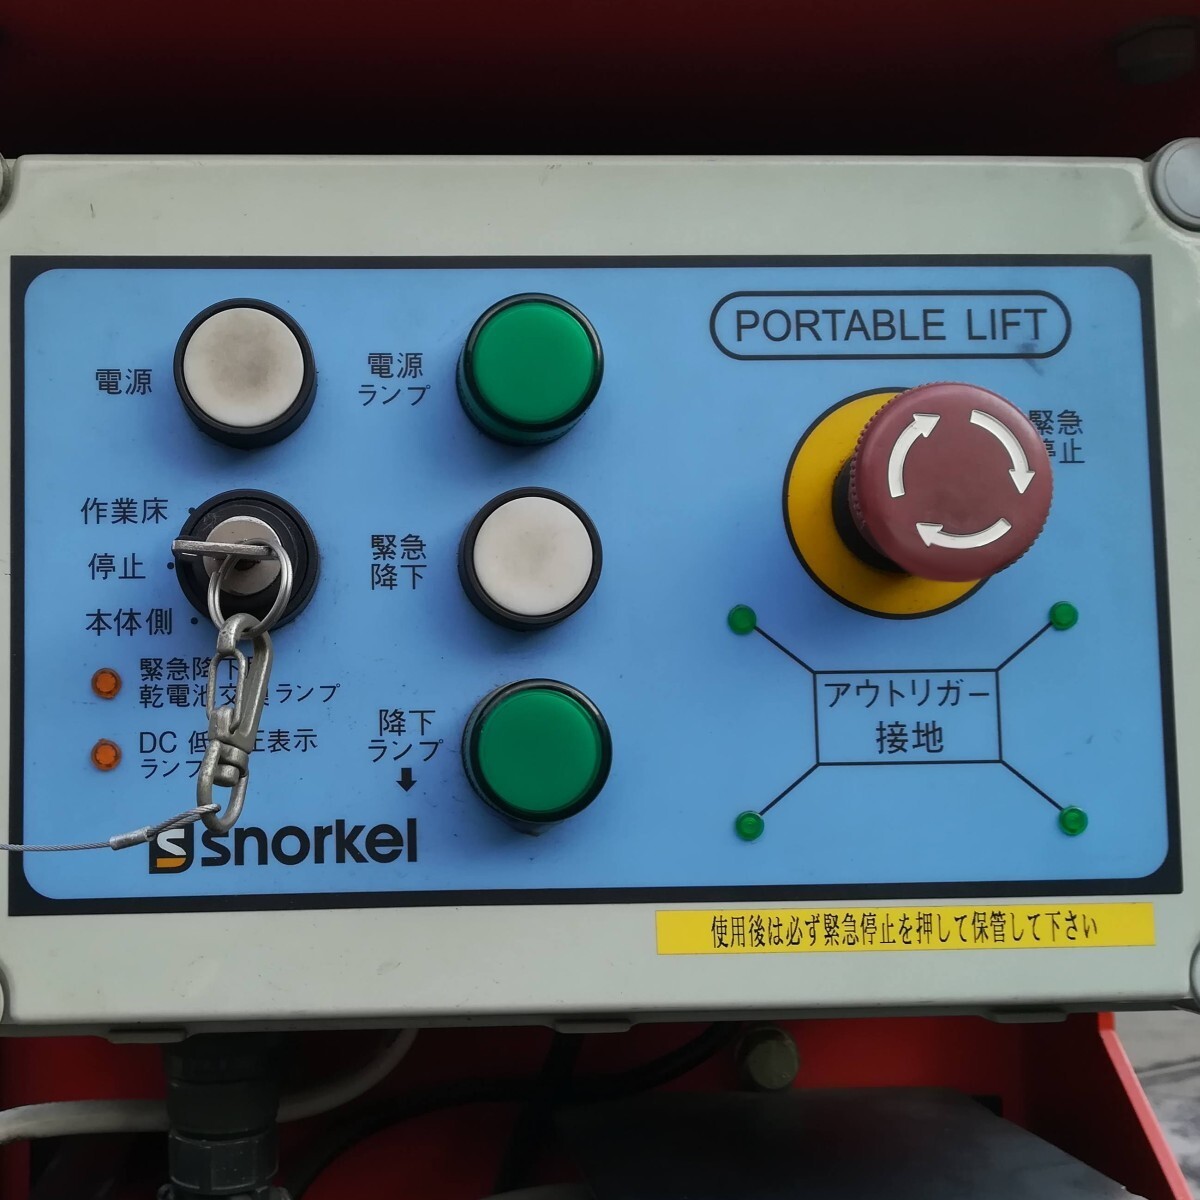 [ б/у ] snorkel personal подъёмник высоты верстак электрический подъёмник UL-38E #2031 ( Hasegawa промышленность )